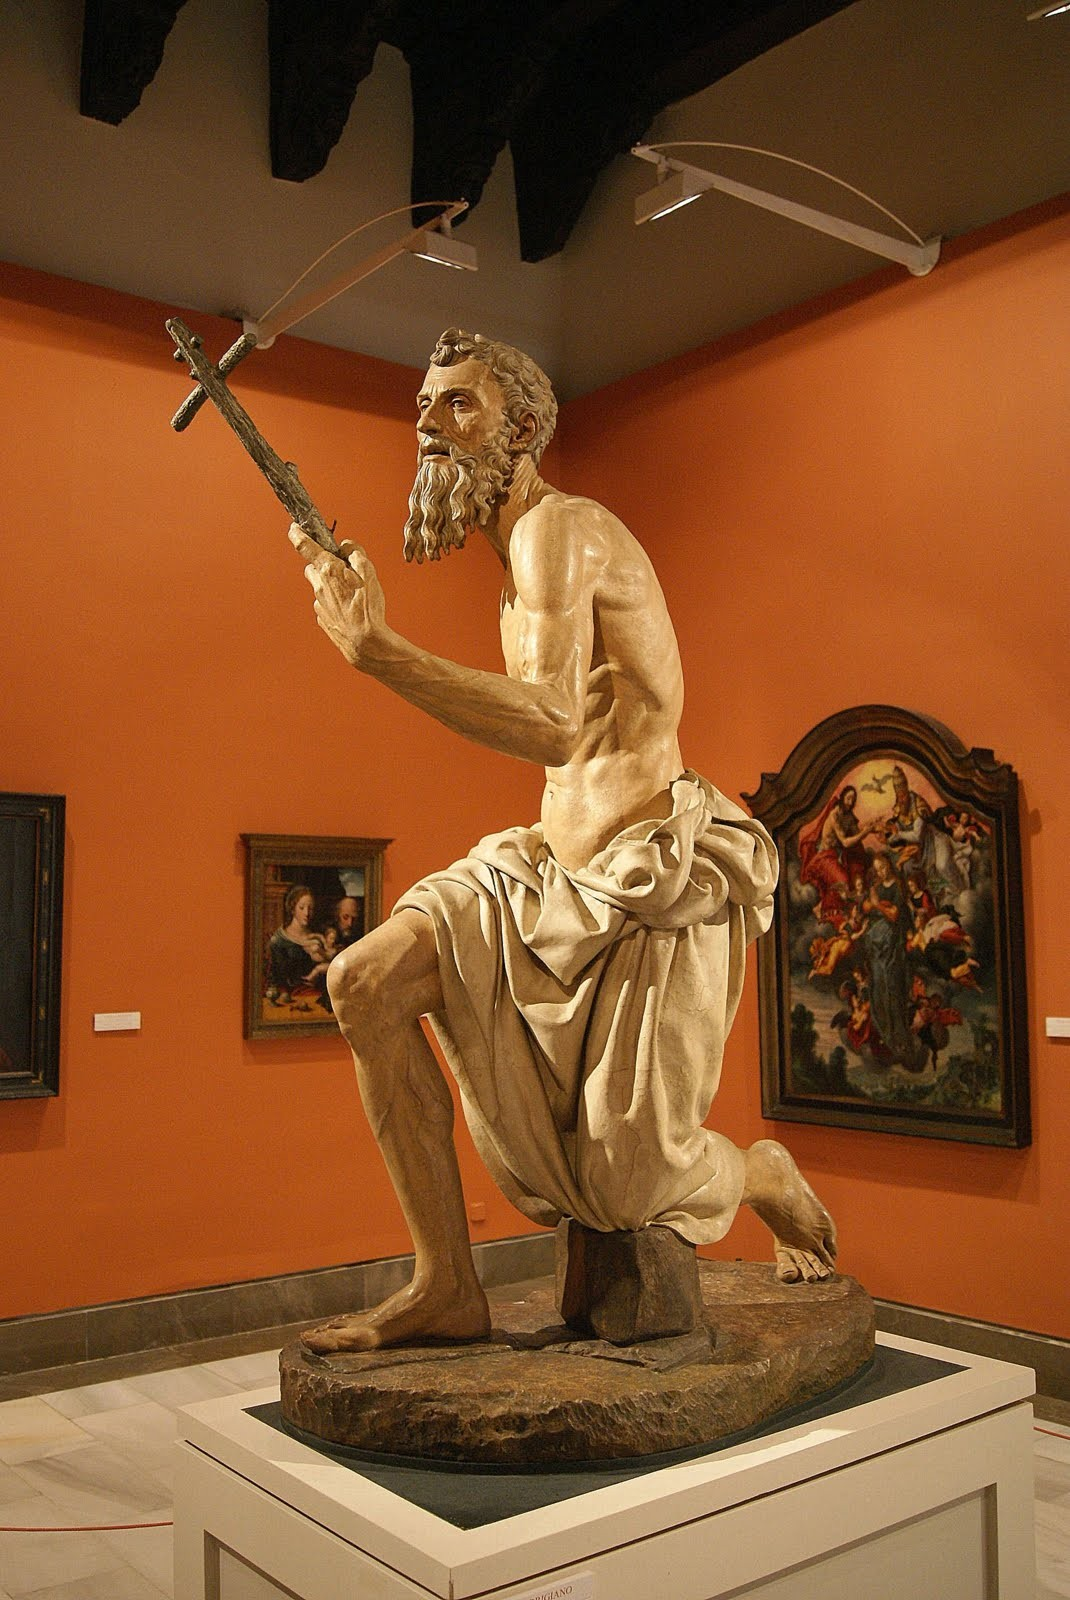 San Jerónimo Pietro di Torrigiano d'antonio, conocido abreviadamente como Pietro Torrigiano (Florencia, 24 de noviembre de 1472 Sevilla, 1528) fue un escultor italiano, conocido por su carácter